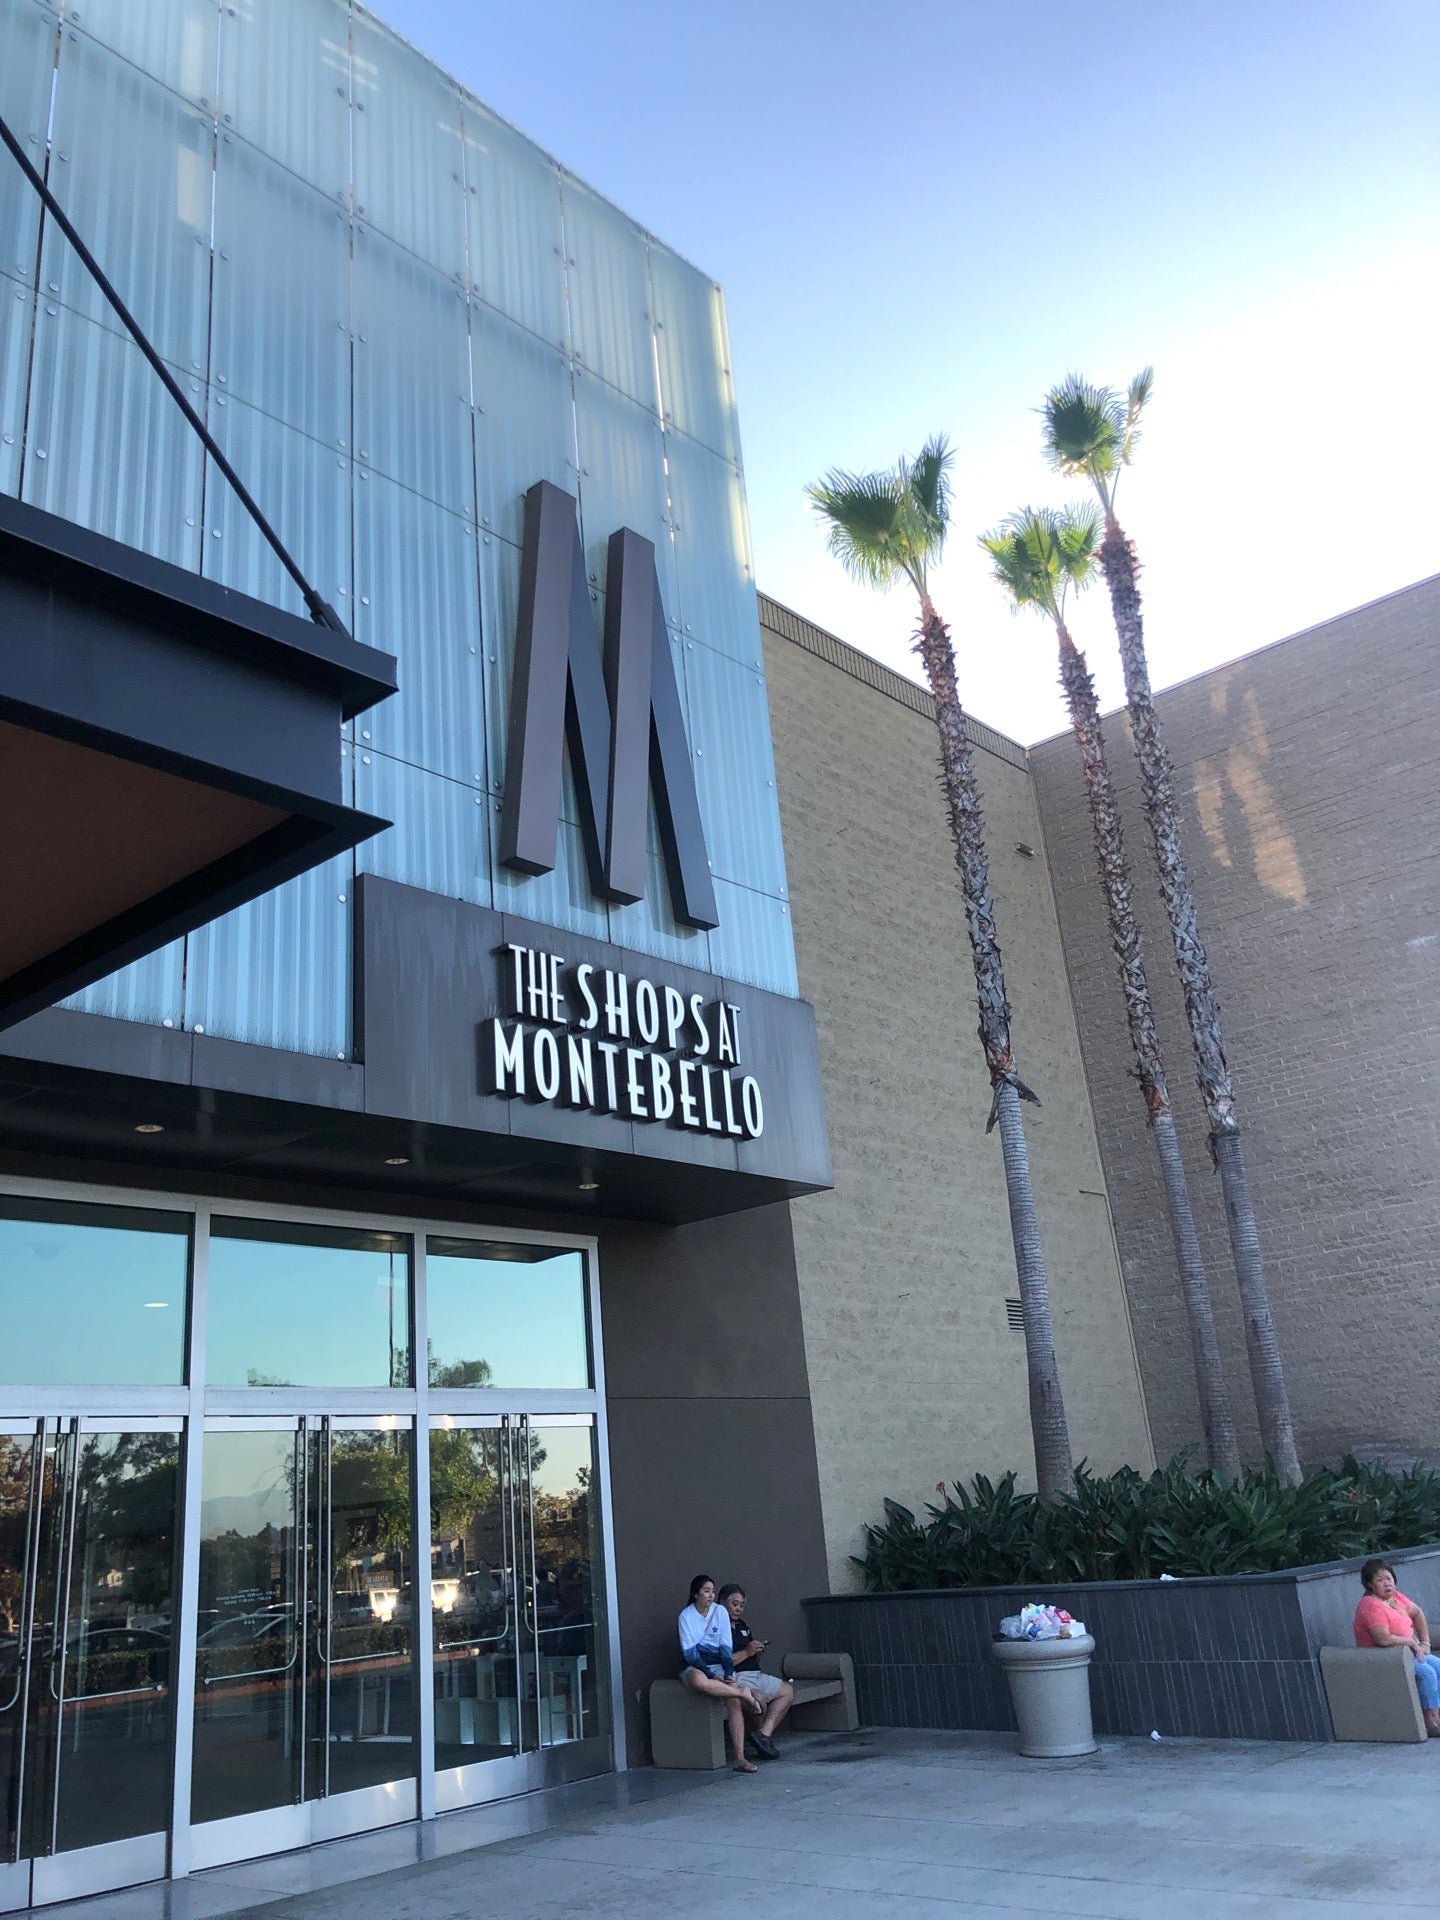 The Shops at Montebello, the major shopping mall in Montebello, California